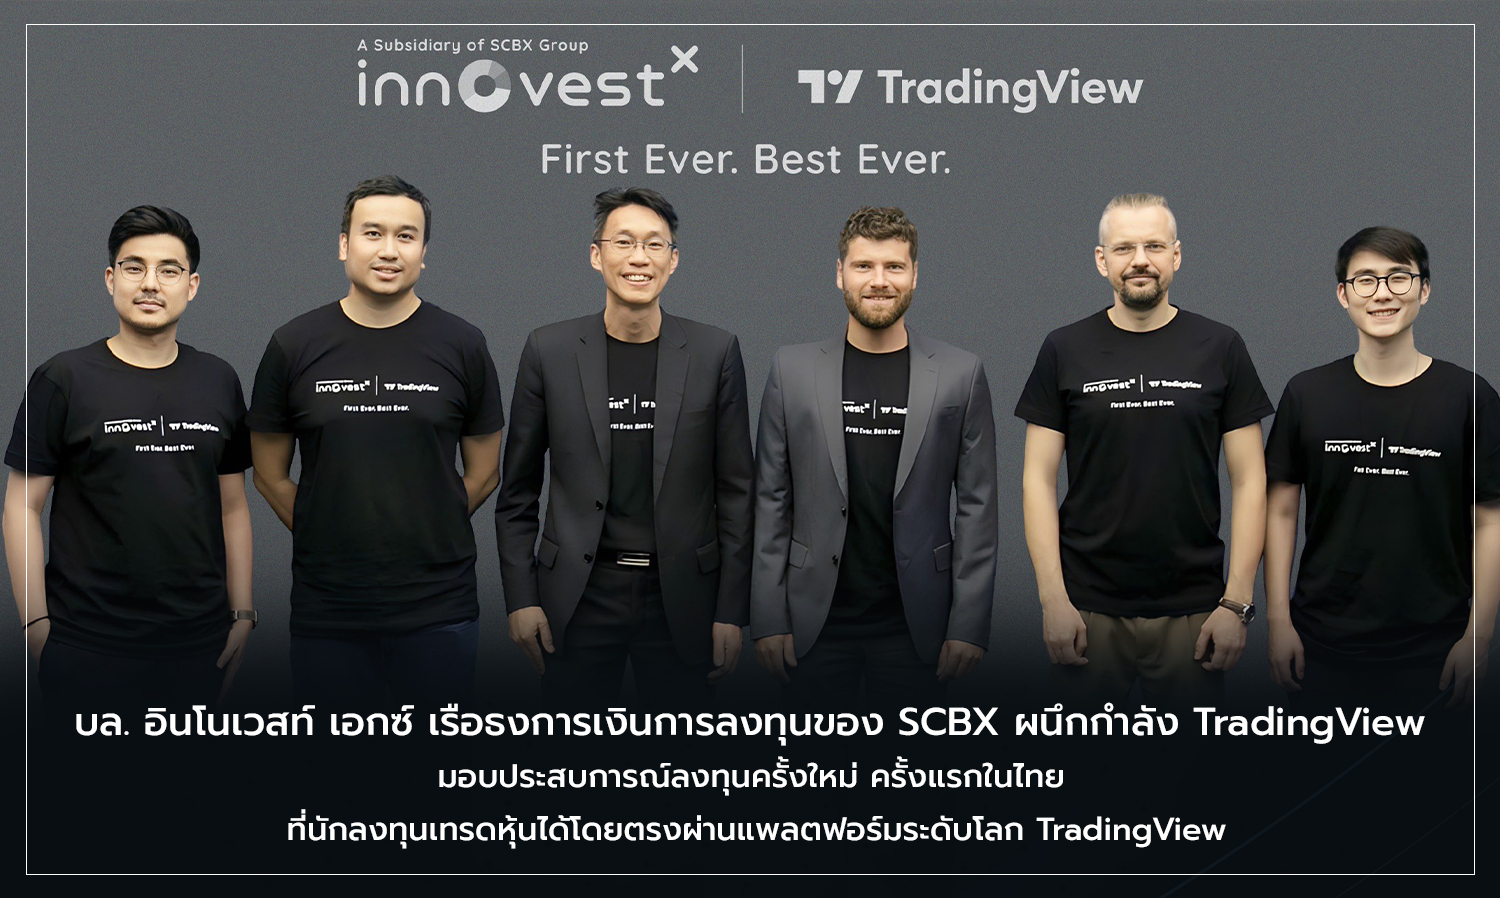 บล. อินโนเวสท์ เอกซ์ เรือธงการเงินการลงทุนของ SCBX ผนึกกำลัง TradingView  มอบประสบการณ์ลงทุนครั้งใหม่ ครั้งแรกในไทย  ที่นักลงทุนเทรดหุ้นได้โดยตรงผ่านแพลตฟอร์มระดับโลก TradingView